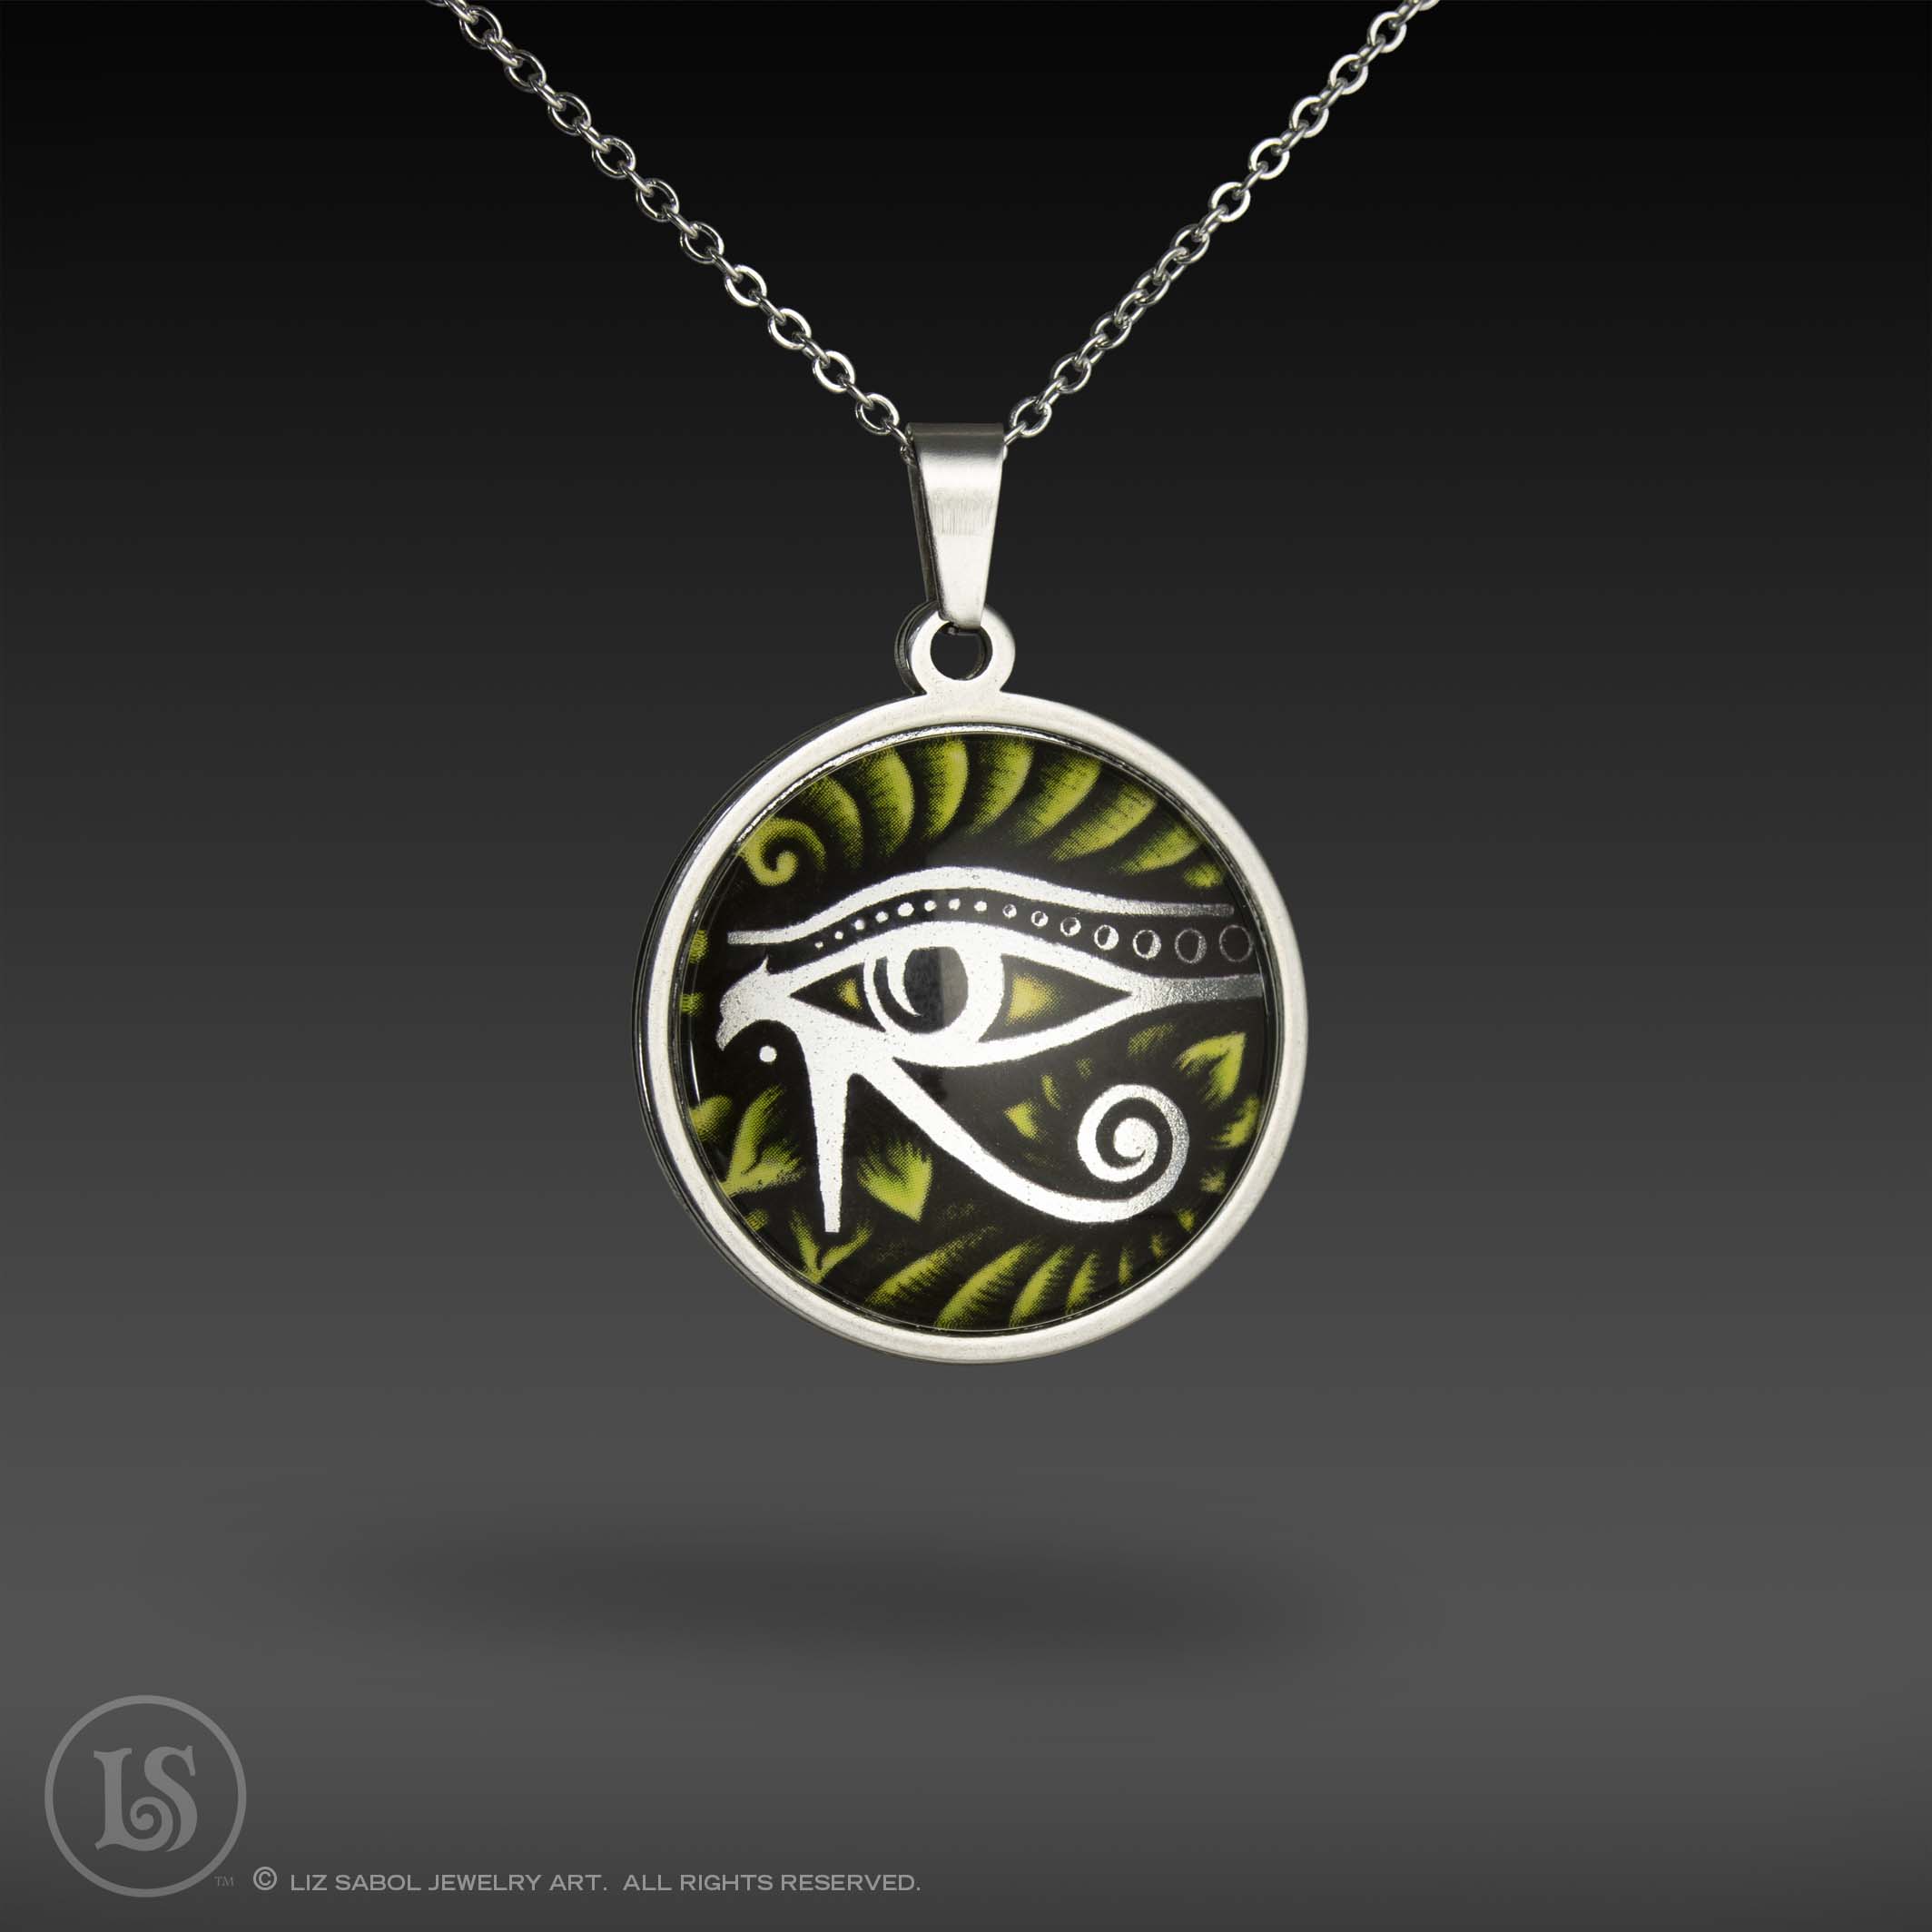 Eye of Horus Pendant, Glass, Stainless Steel